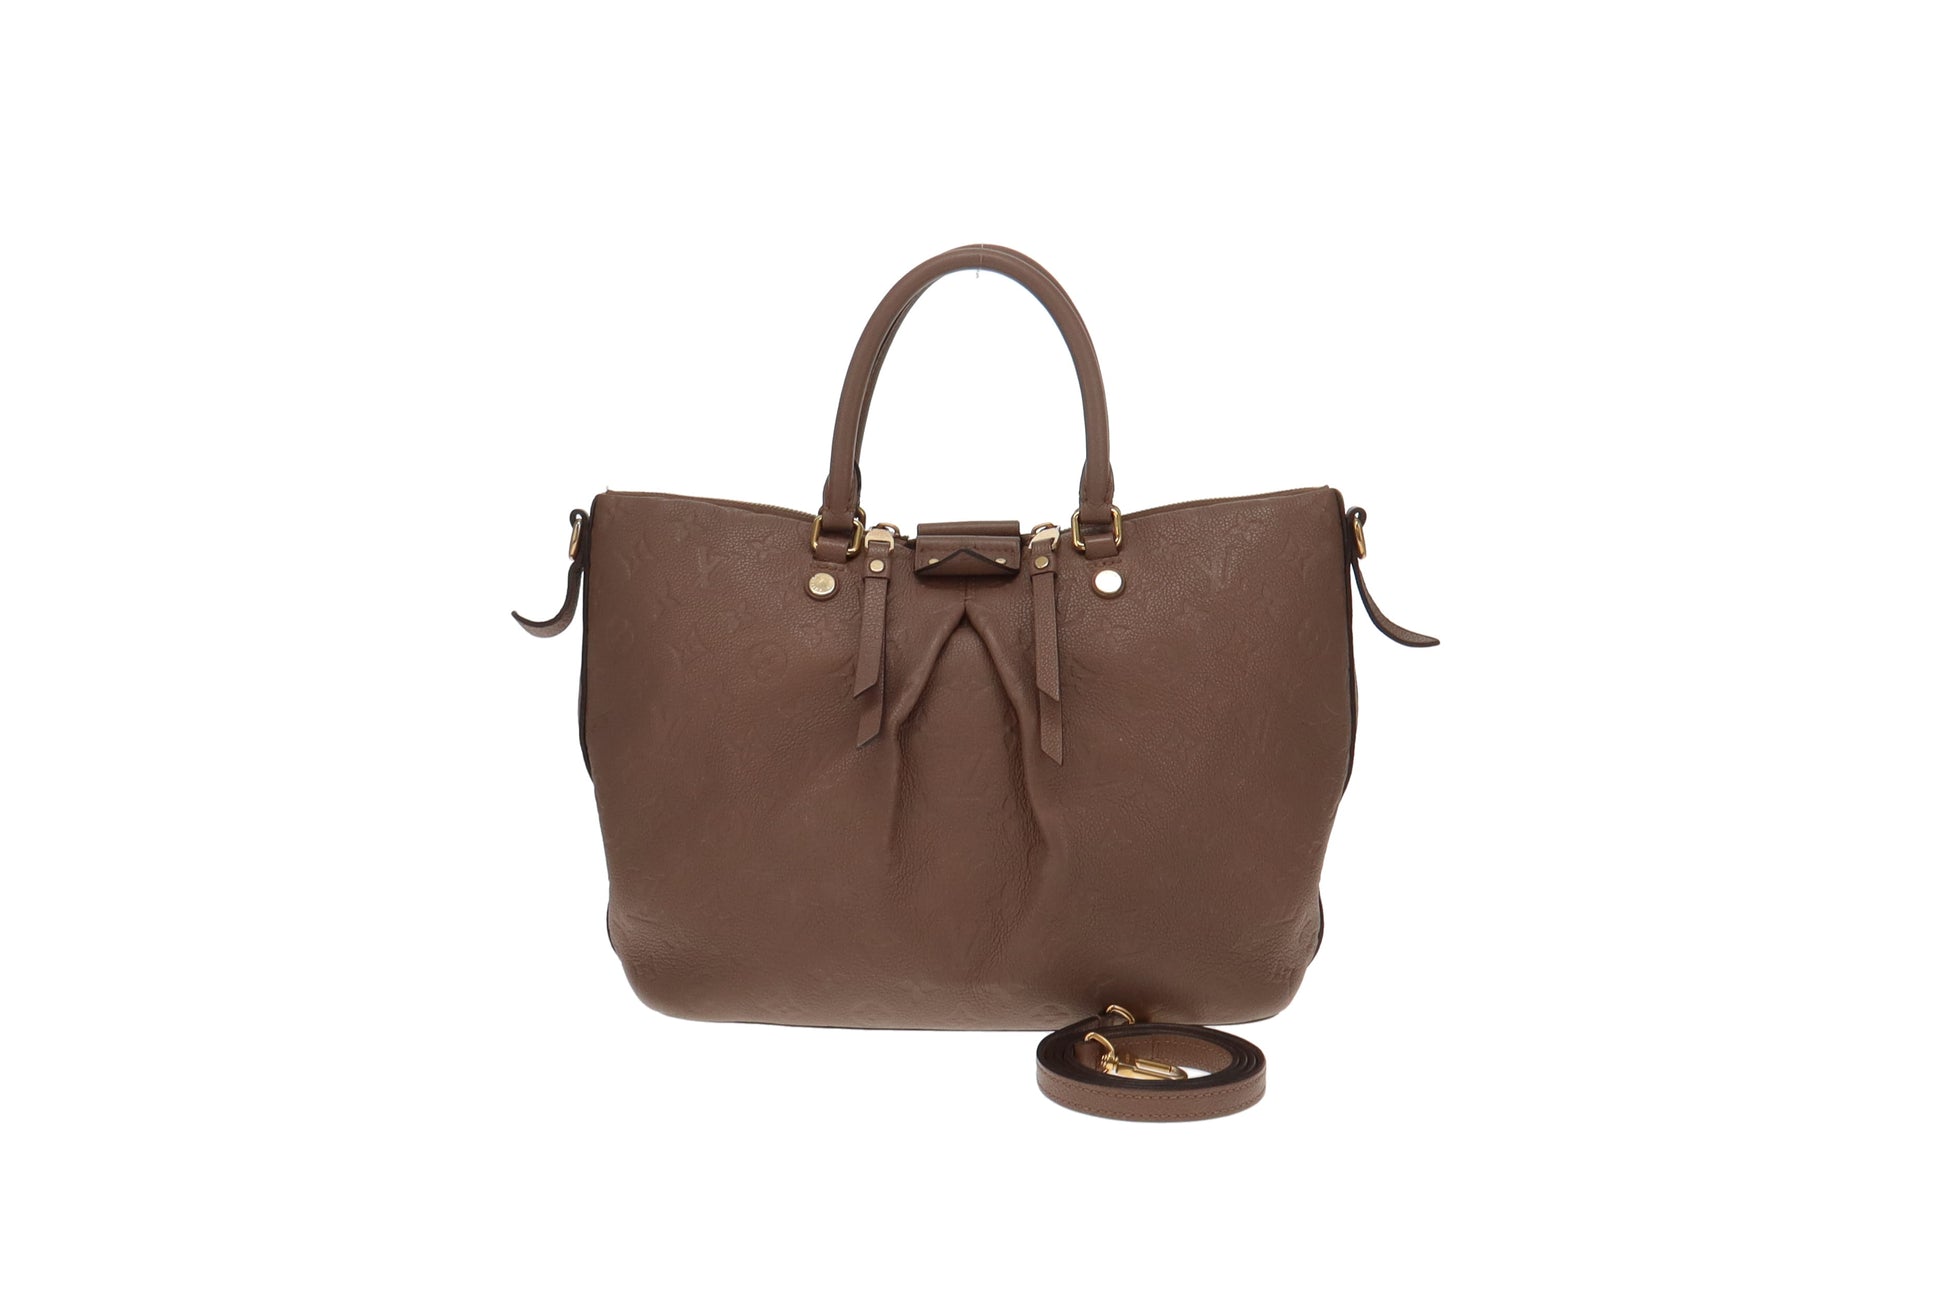 Louis Vuitton Mazarine Empreinte Leather MM Bag in Taupe